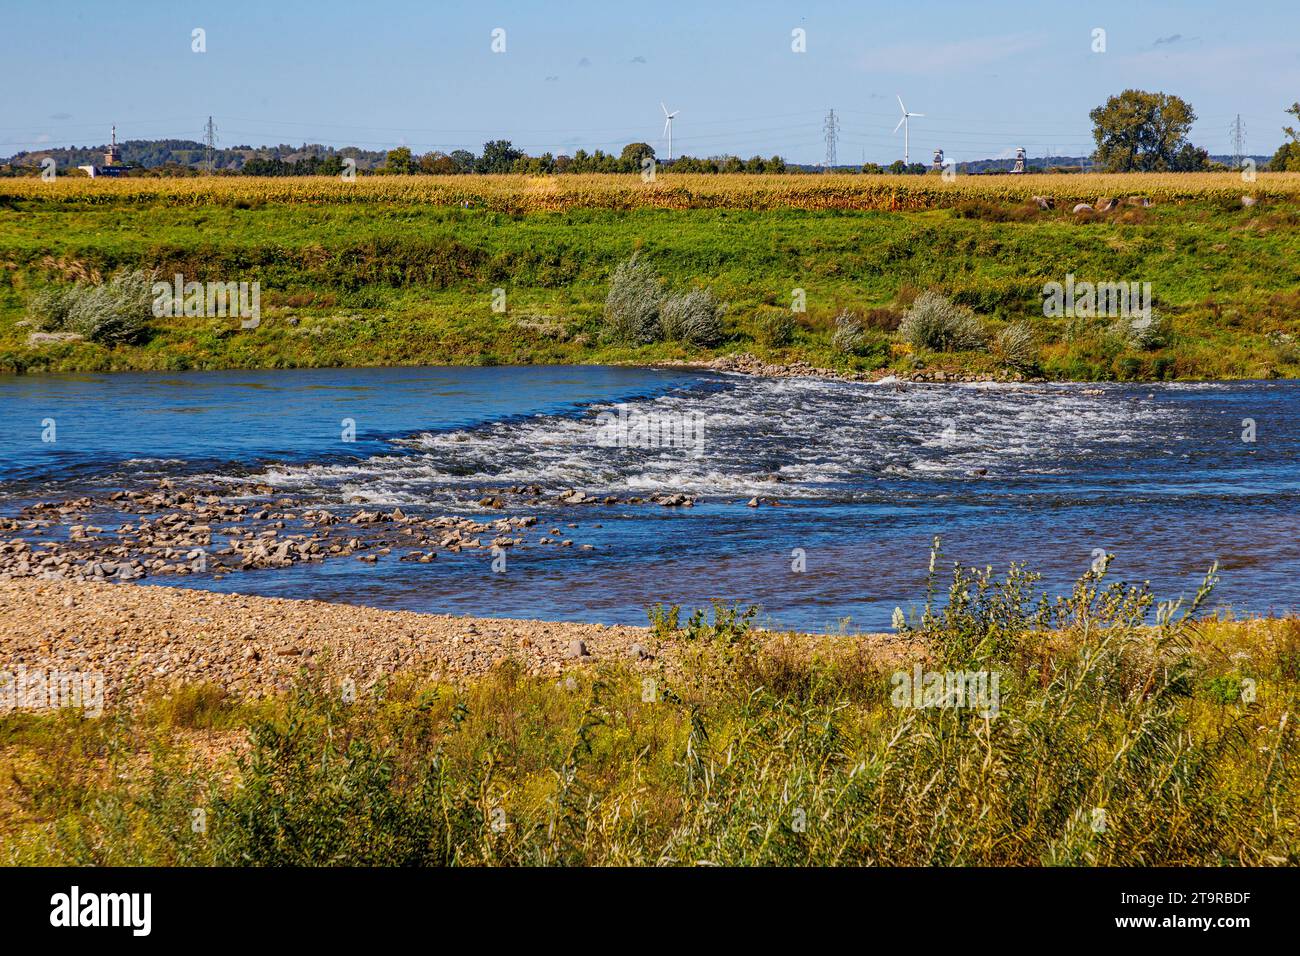 Fiume Maas con acqua che scorre tra pietre, terreno alluvionale, campagna belga con alberi sullo sfondo blu, giornata di sole a Maasvallei Foto Stock